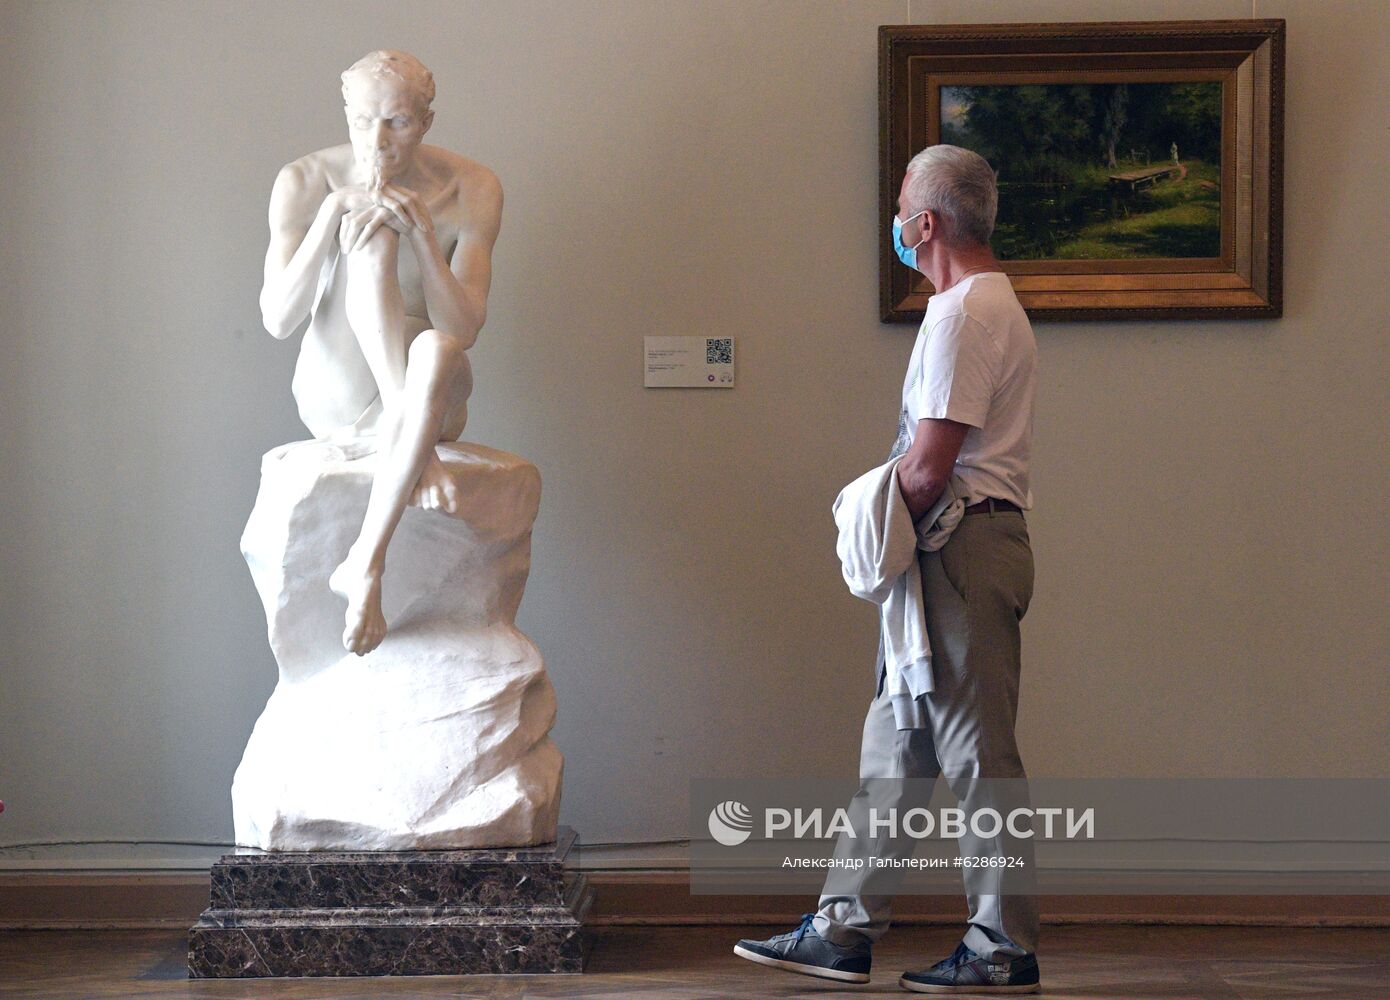 Русский музей возобновил работу после карантина